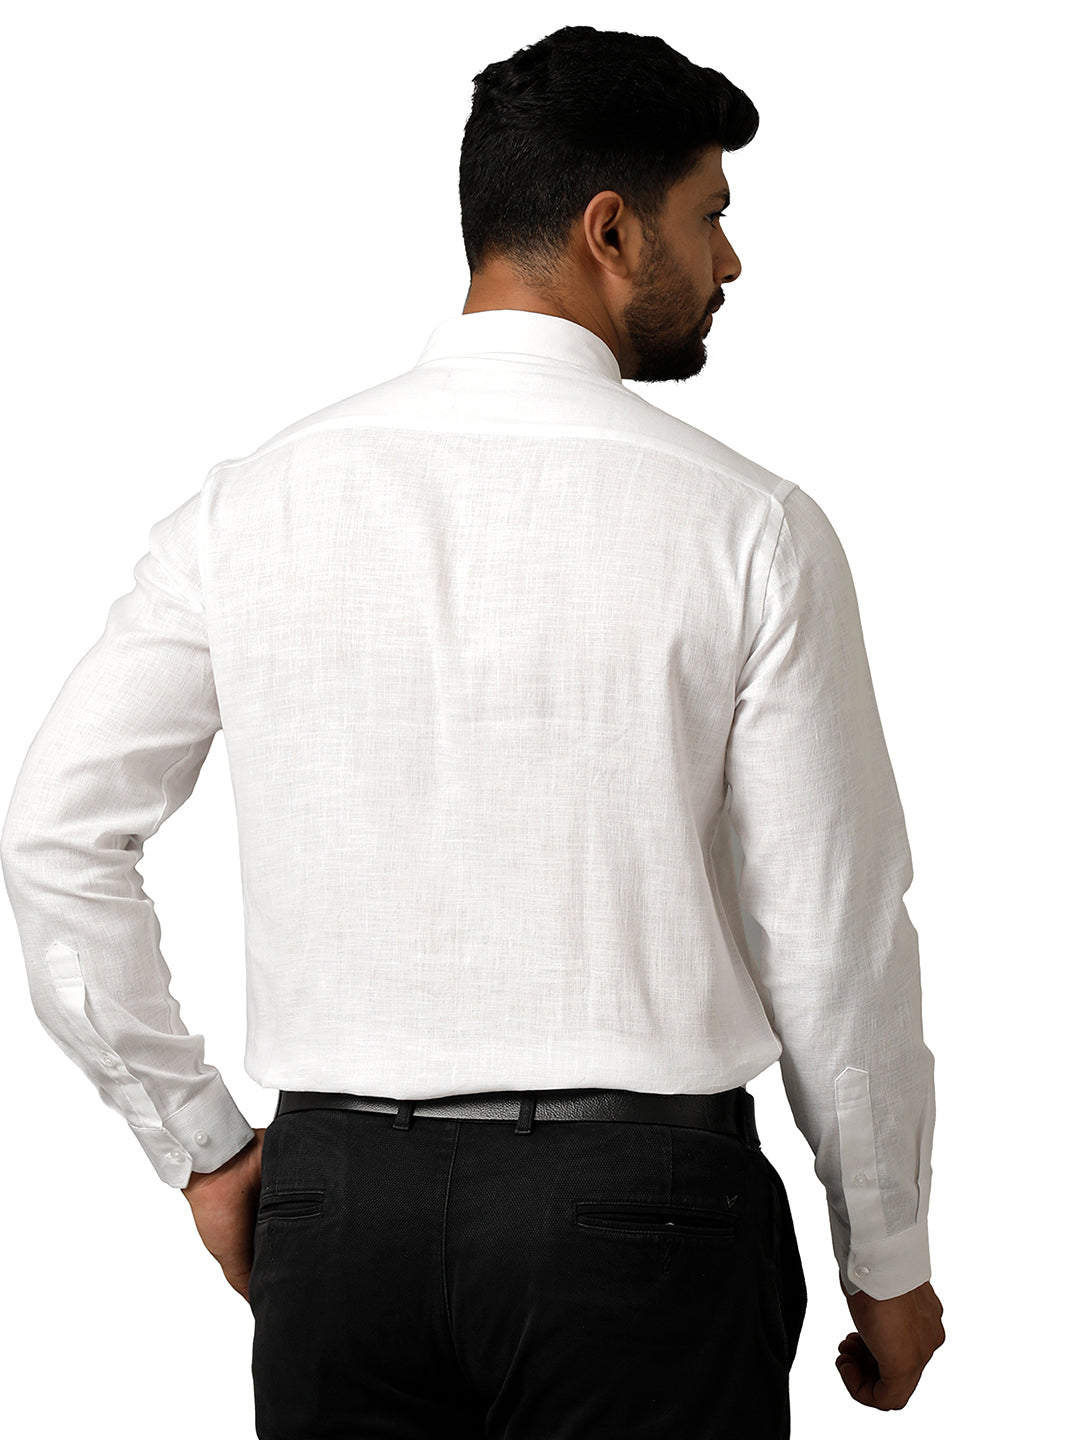 Mens 100% Pure Linen White Shirt Full Sleeves Irish